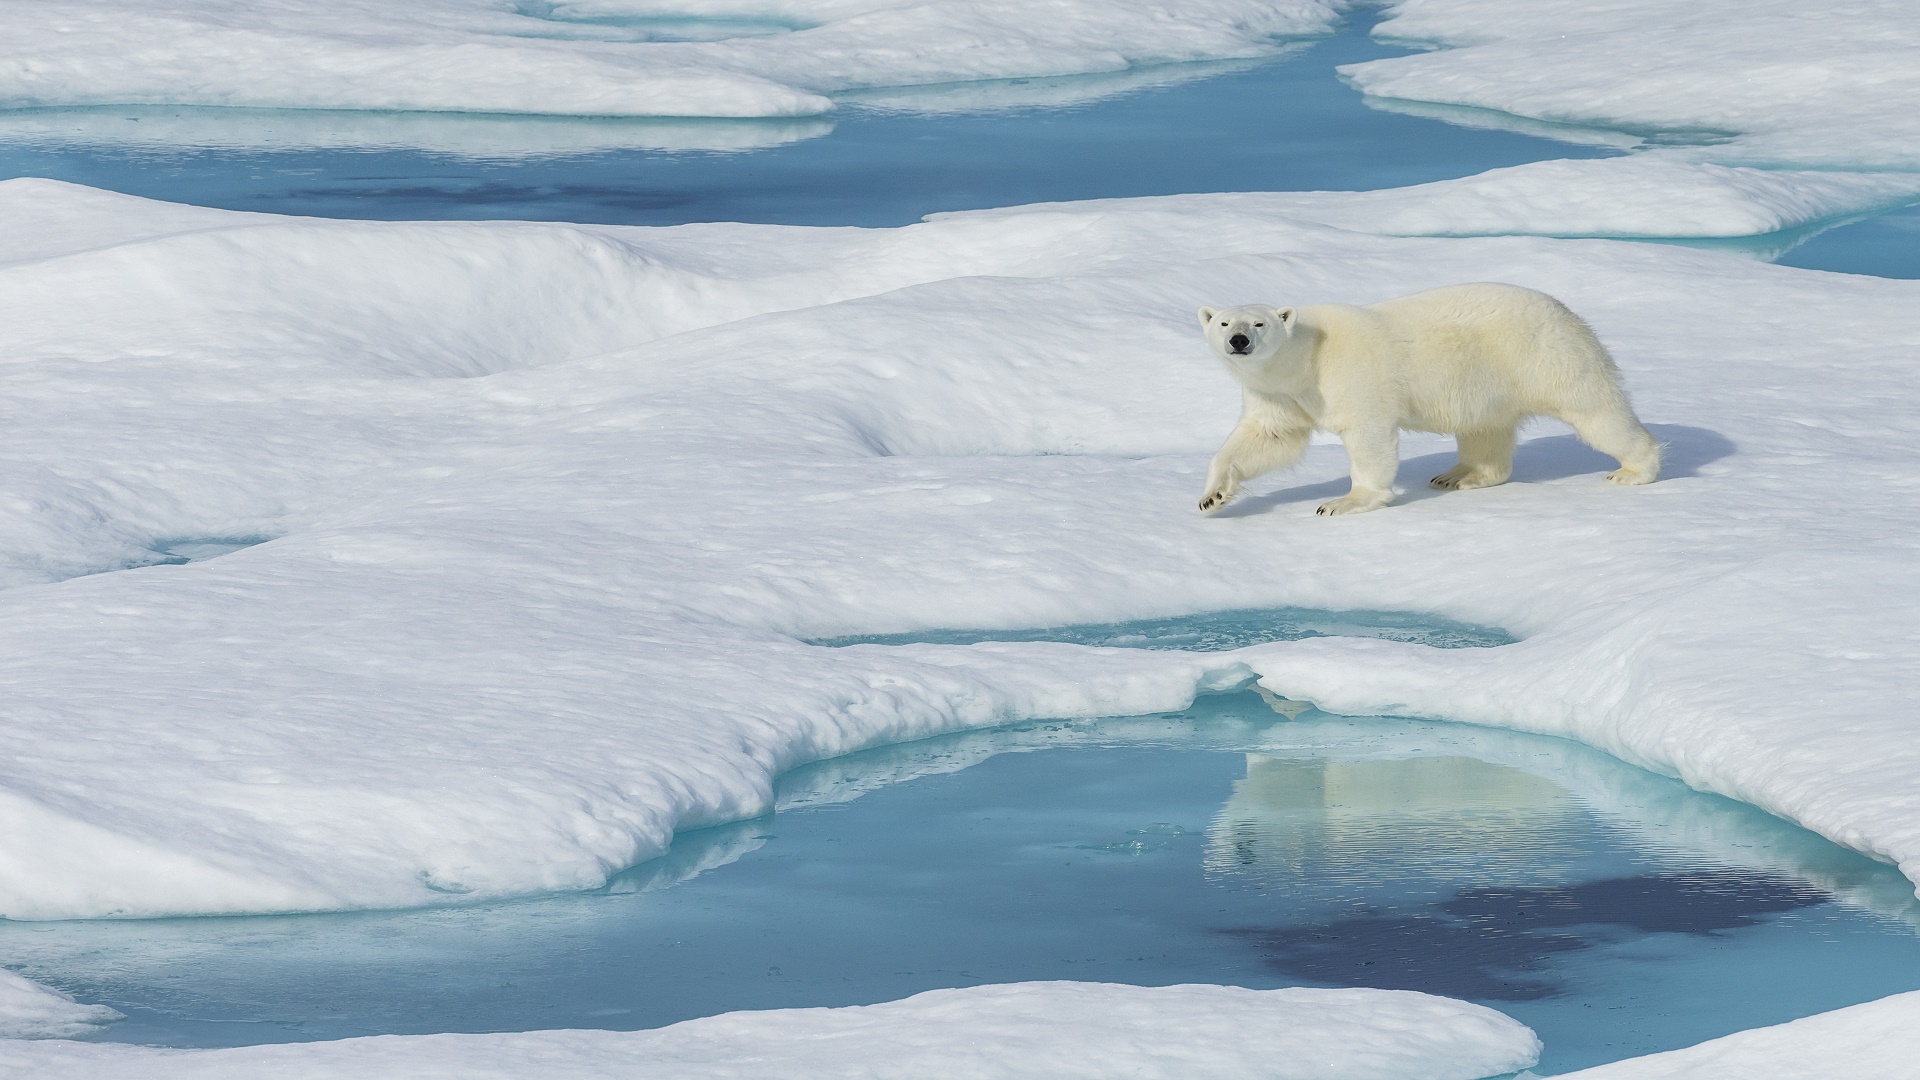 كيف تغيّر القطب الشمالي بعد الاحتباس الحراري؟ صور